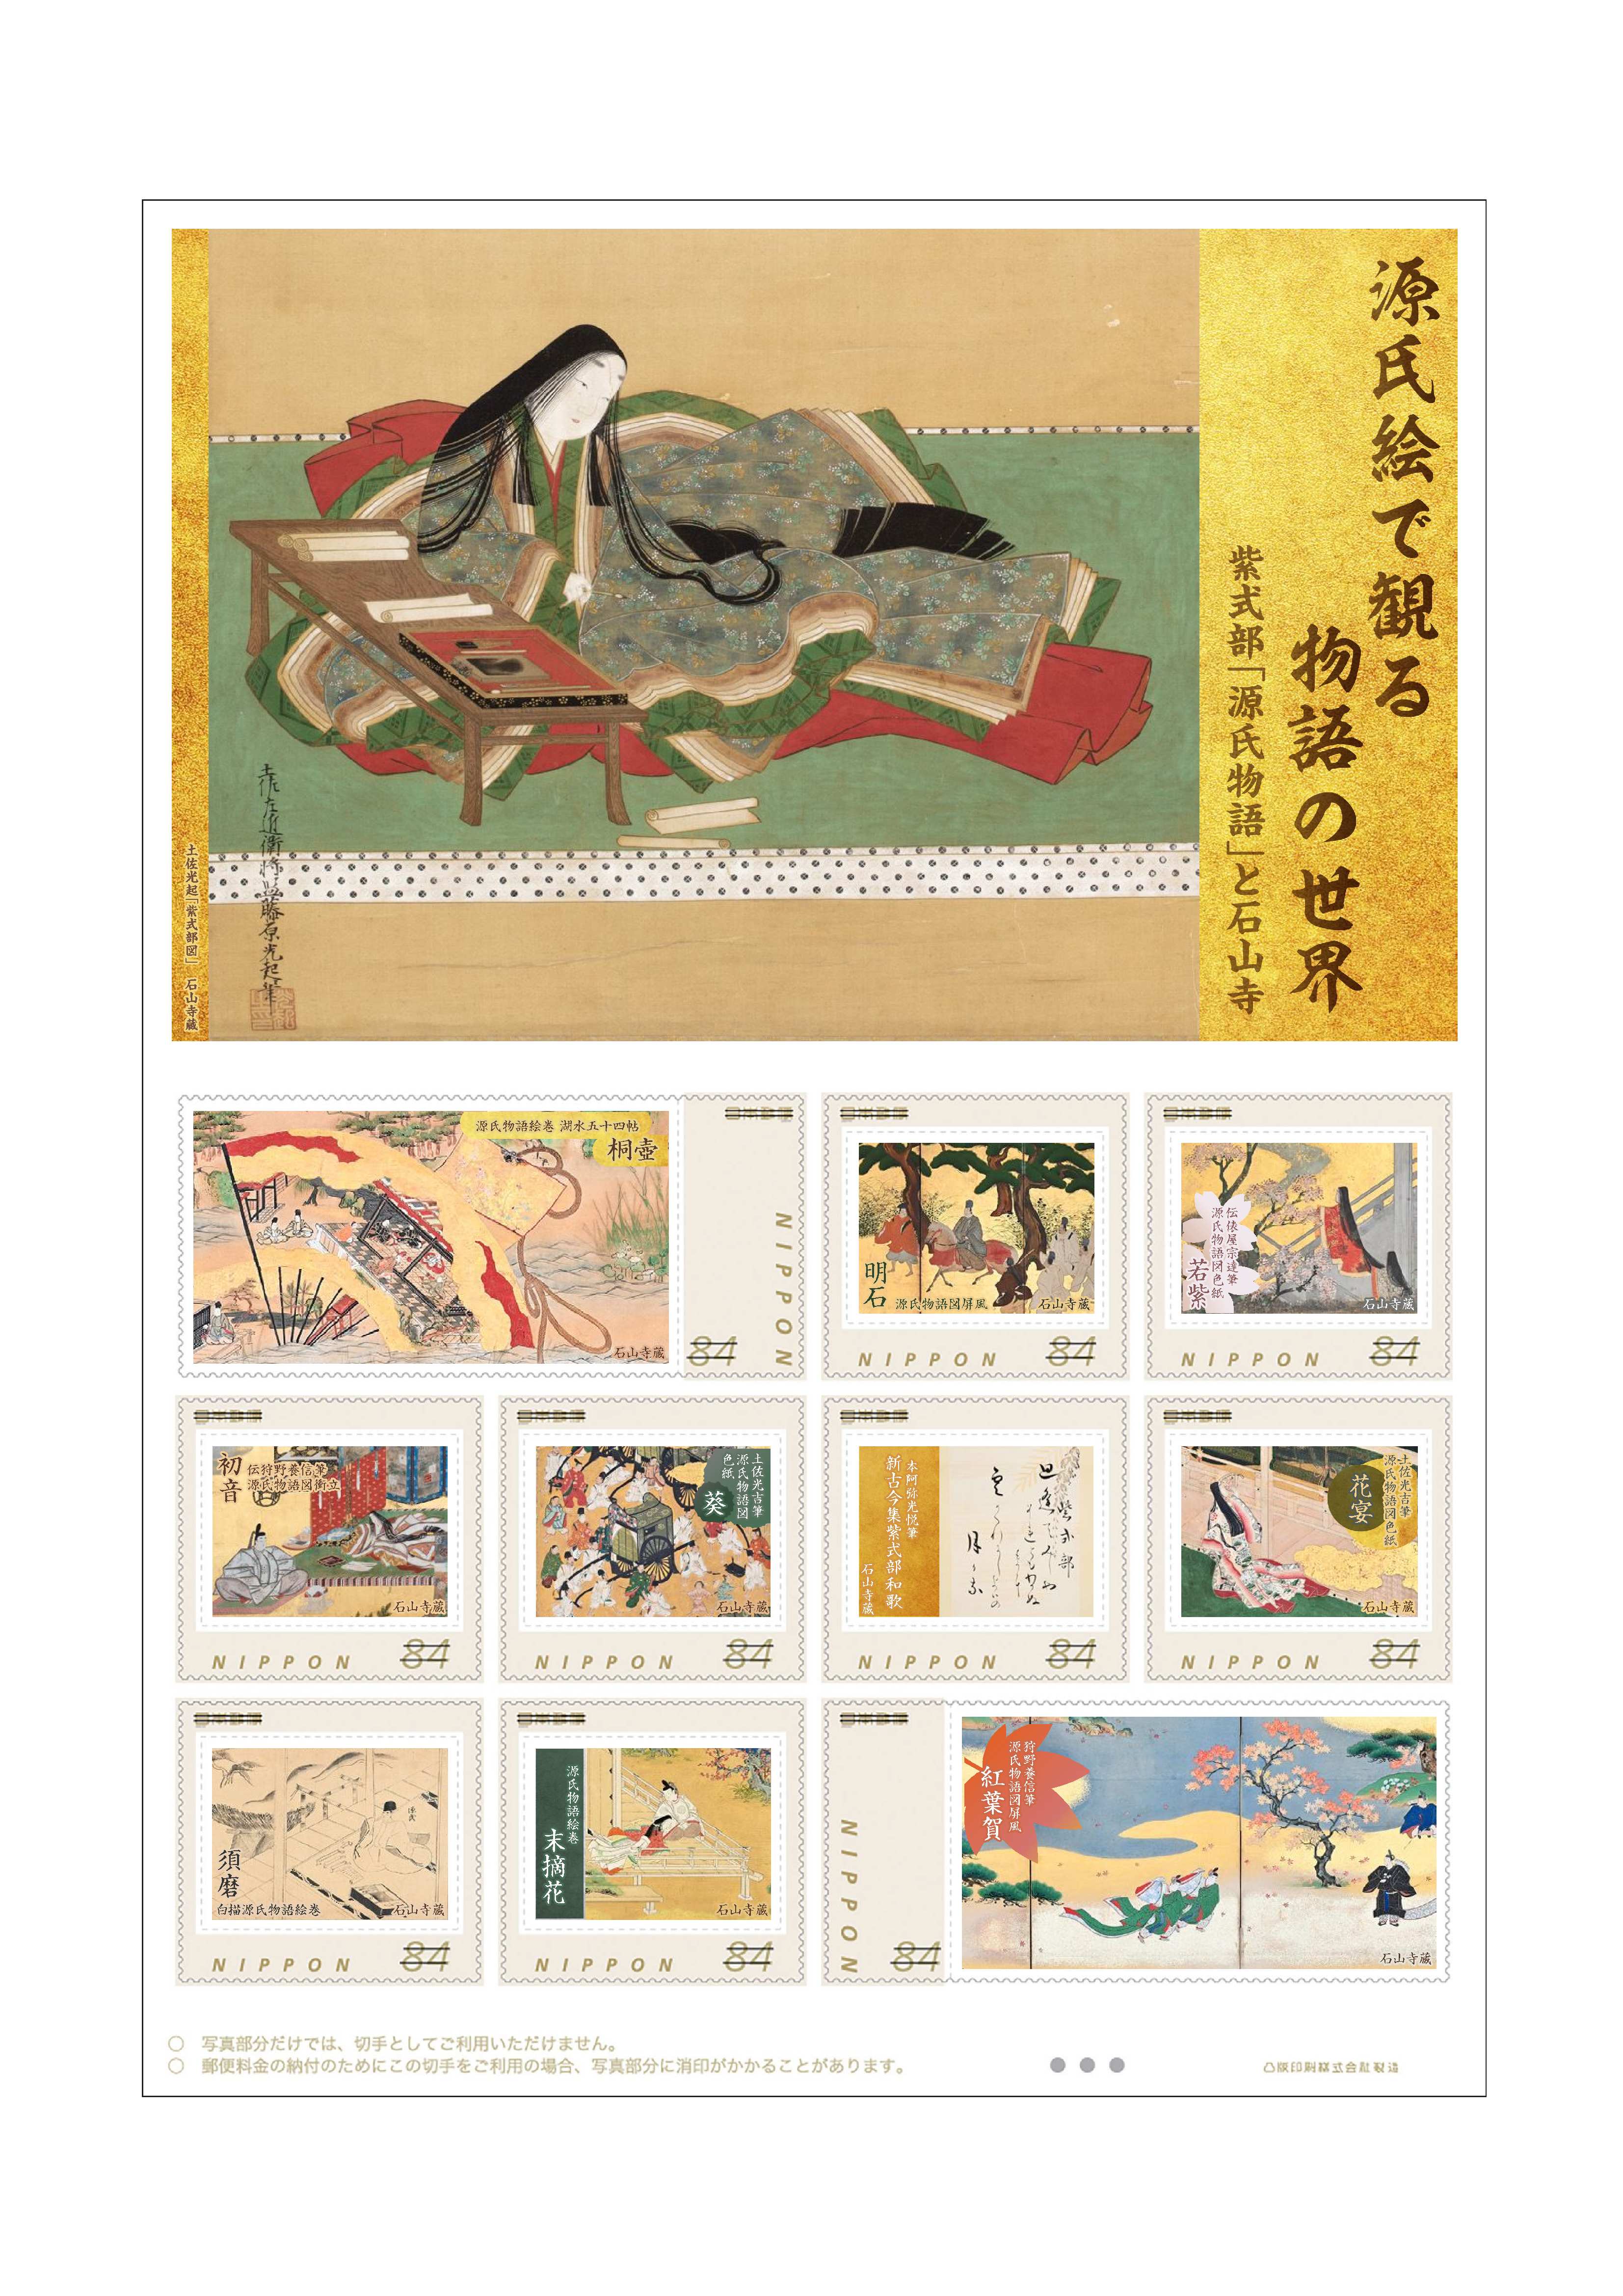 オリジナル フレーム切手「源氏絵で観る物語の世界　紫式部「源氏物語」と石山寺」の販売開始